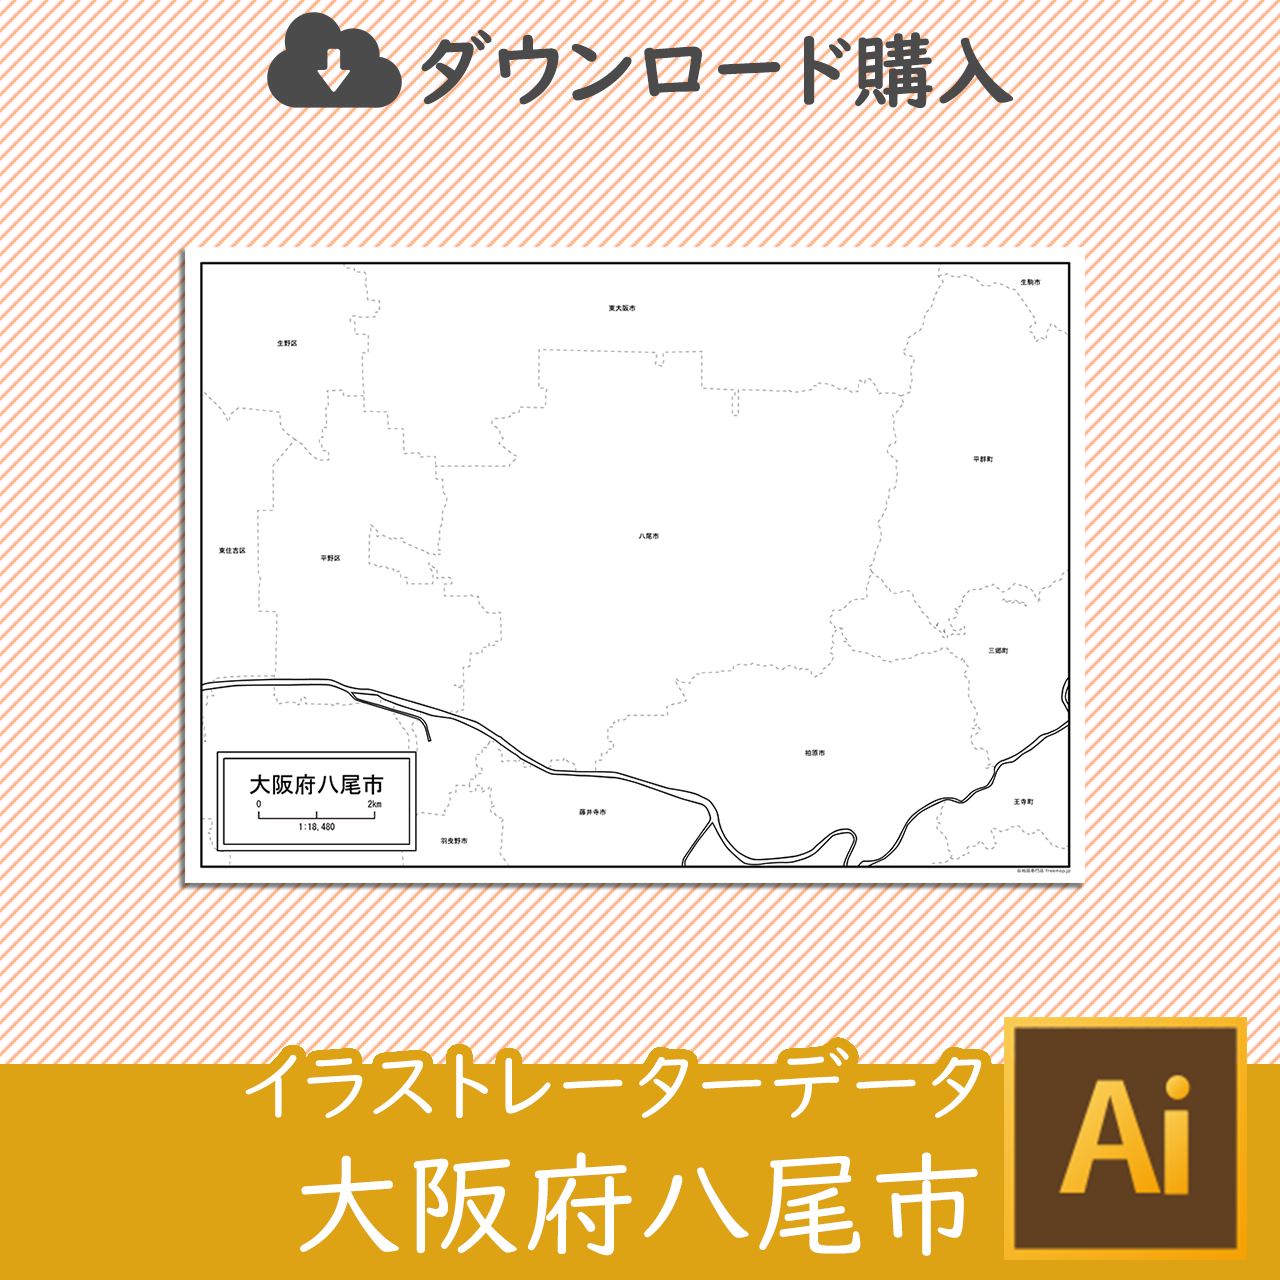 八尾市のaiデータのサムネイル画像